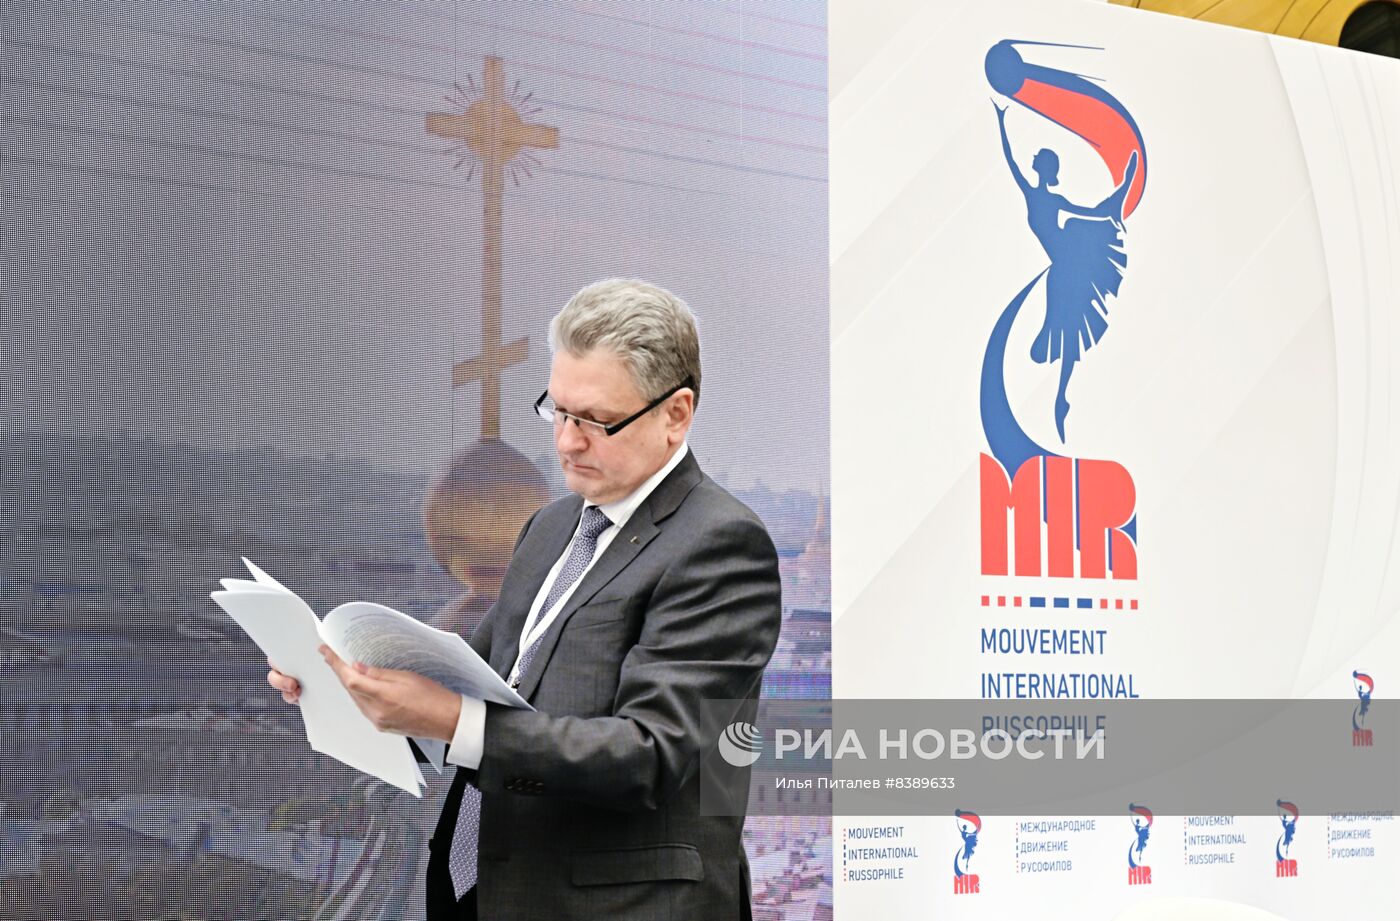 Открытие учредительного конгресса Международного движения русофилов